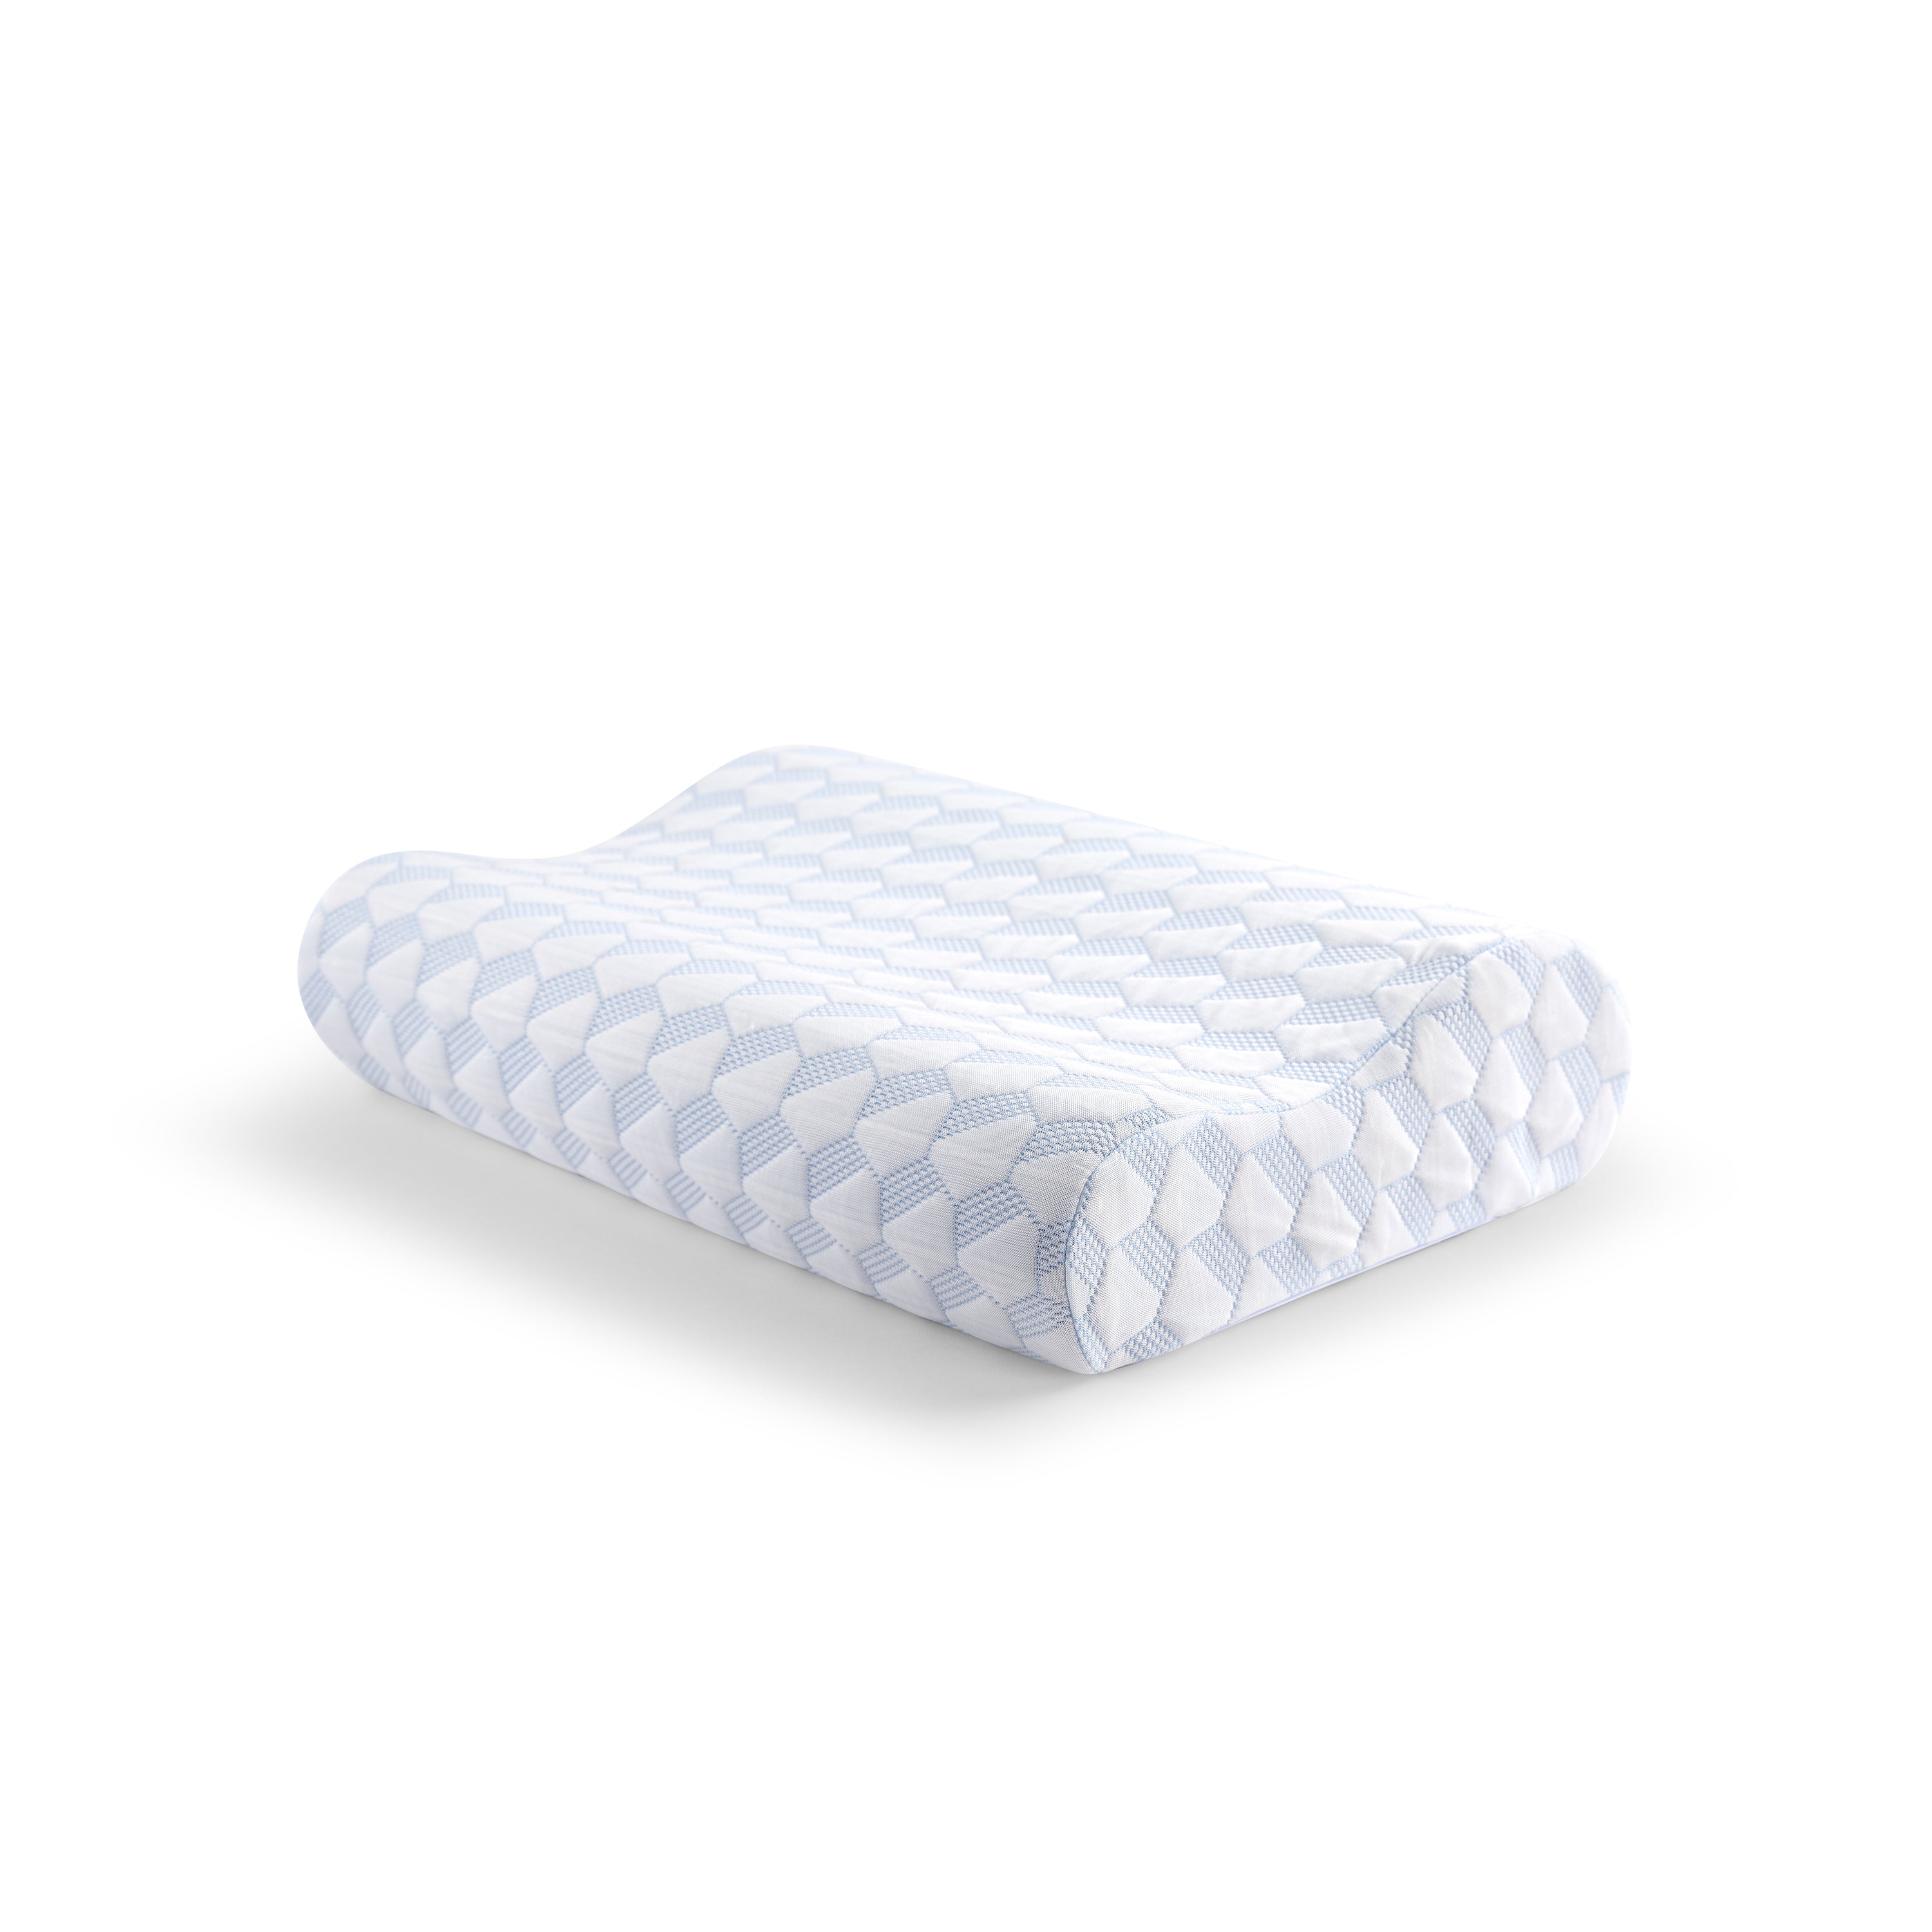 Cooling Knit Memory Foam Contour Pillow